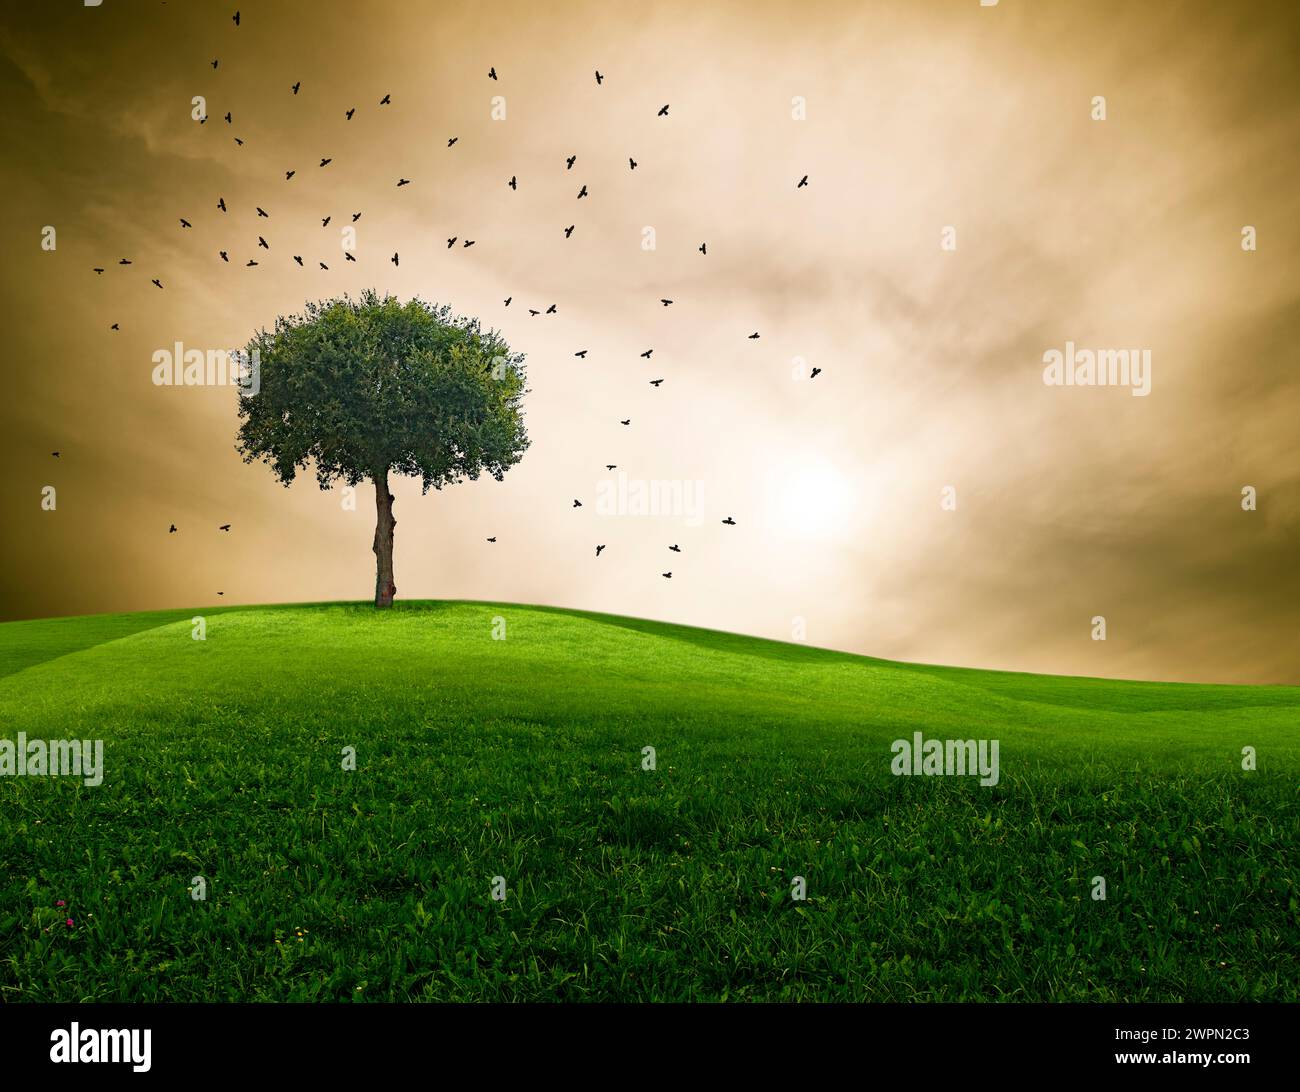 Albero in un paesaggio con un cielo drammatico e corvi che svettano [M] Foto Stock